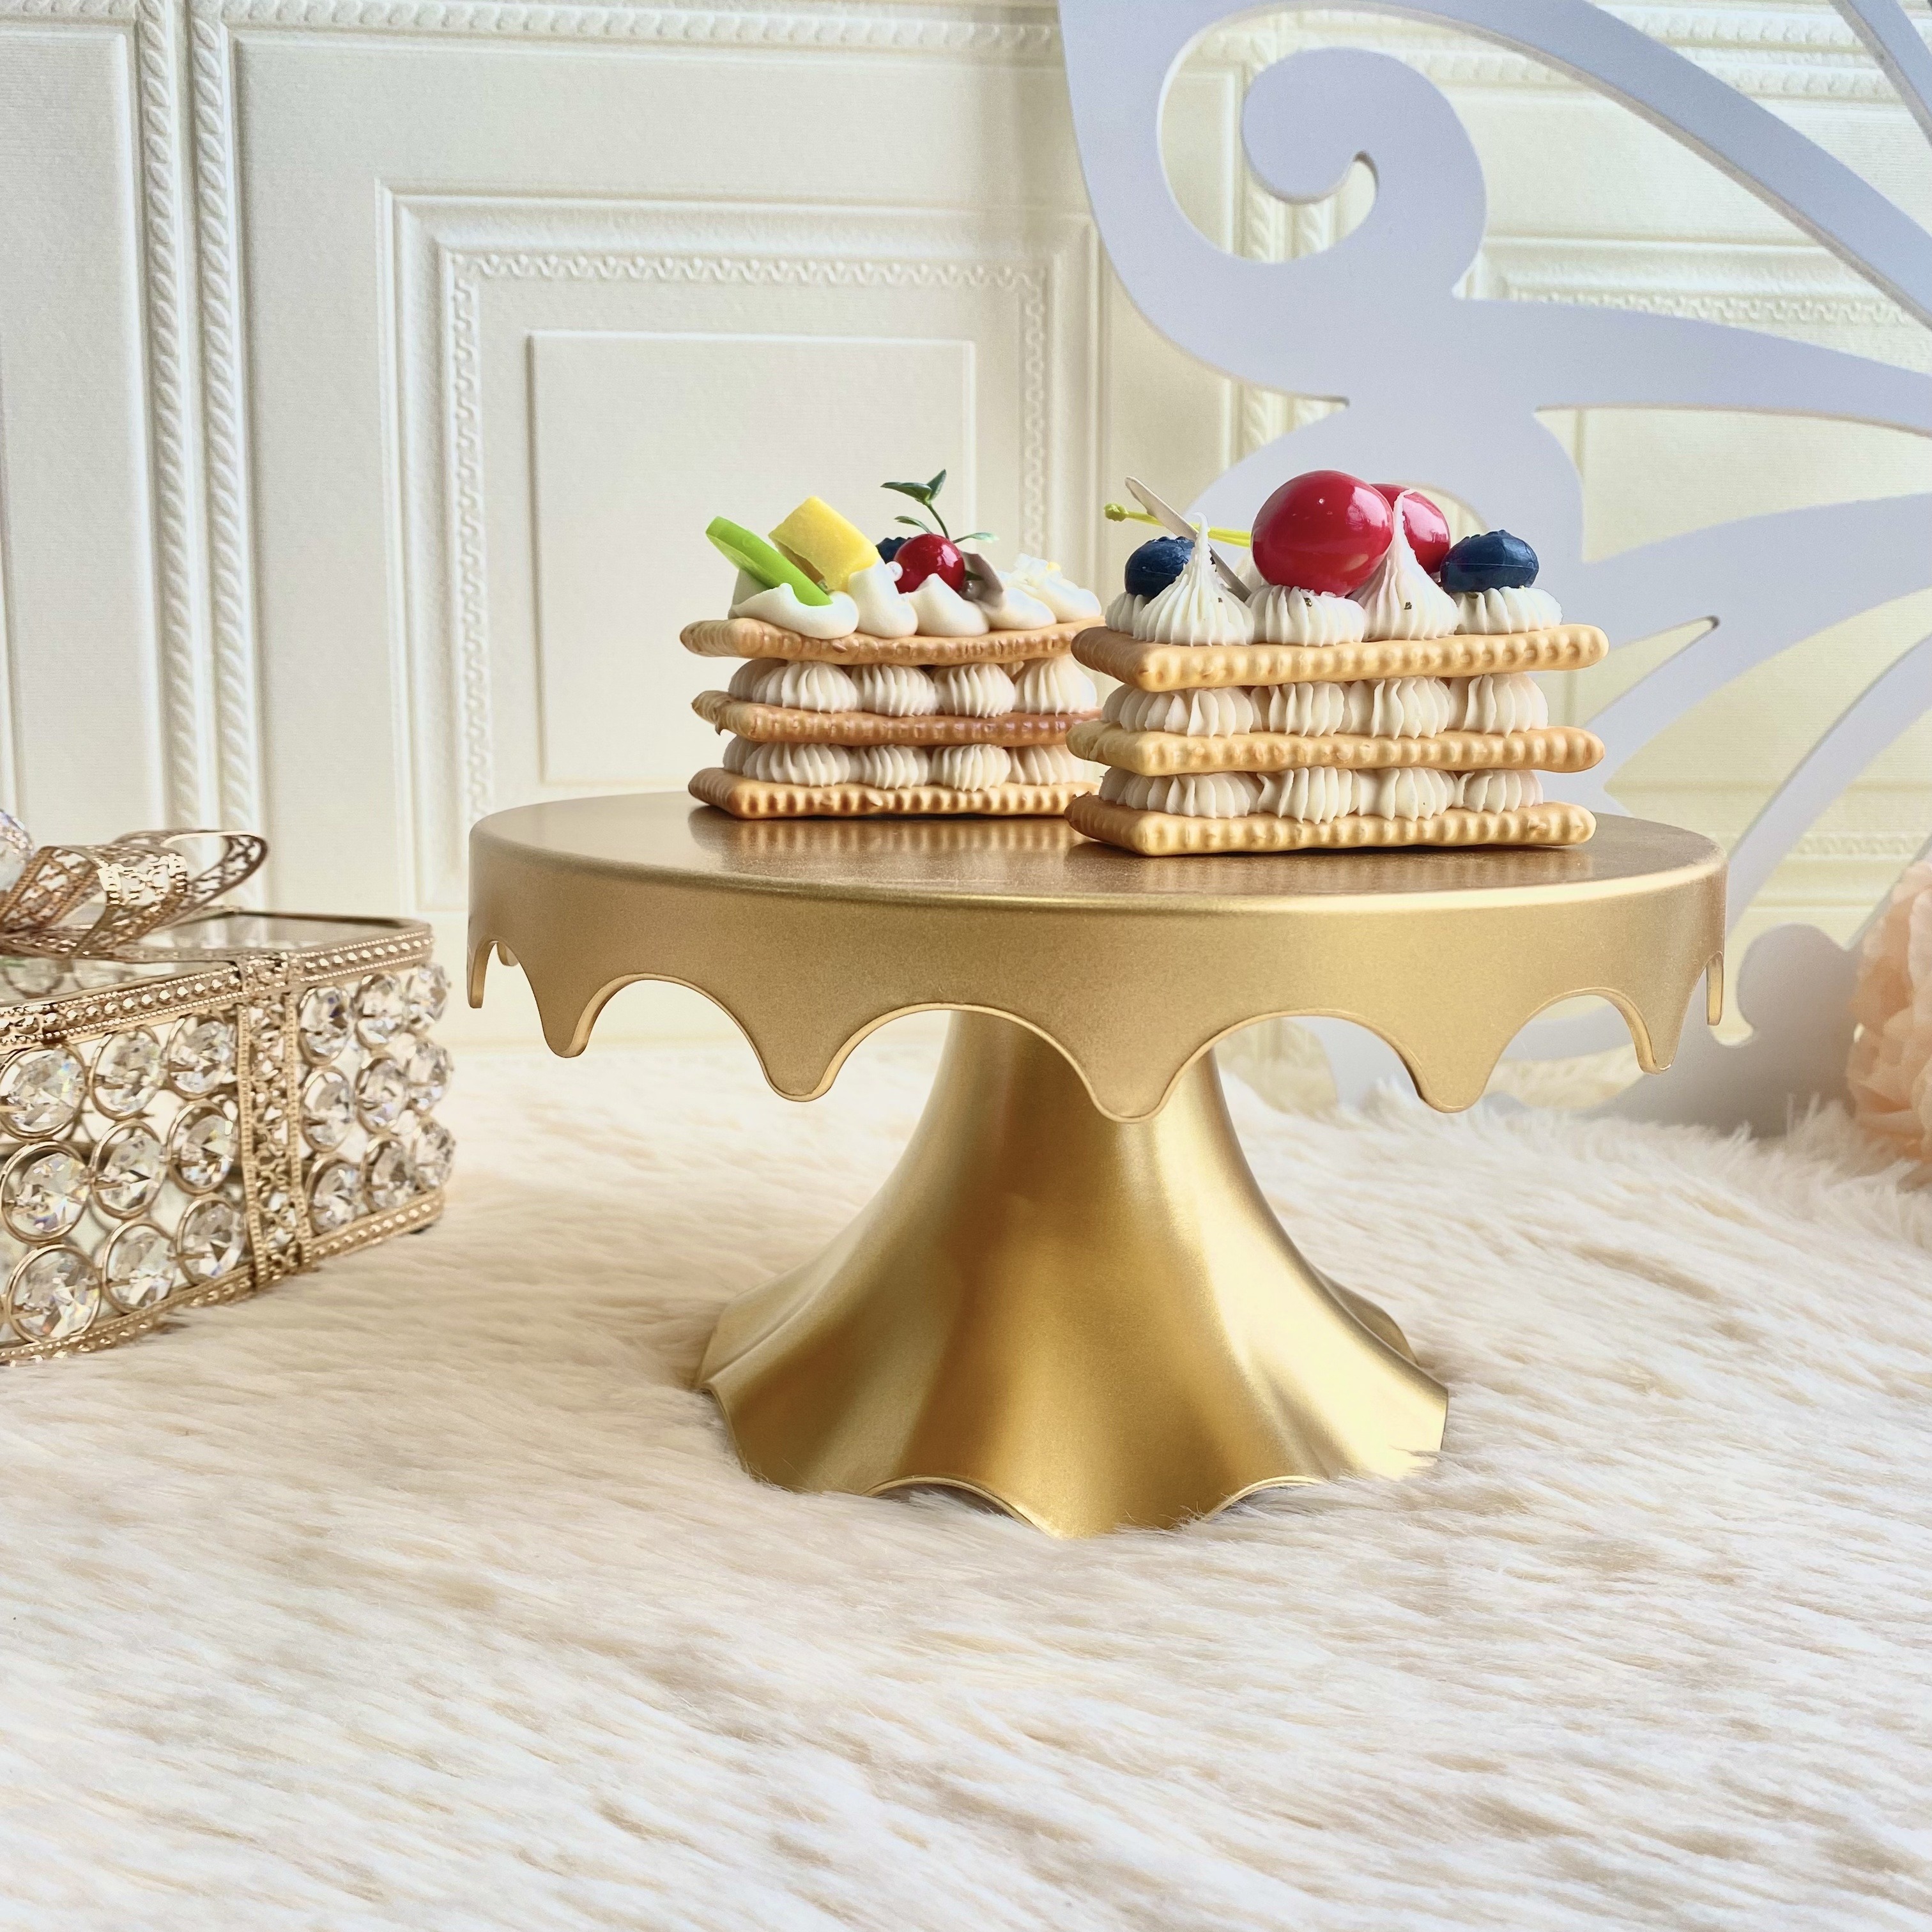 Alzate per frutta pasticceria e torte - Design elegante e moderno